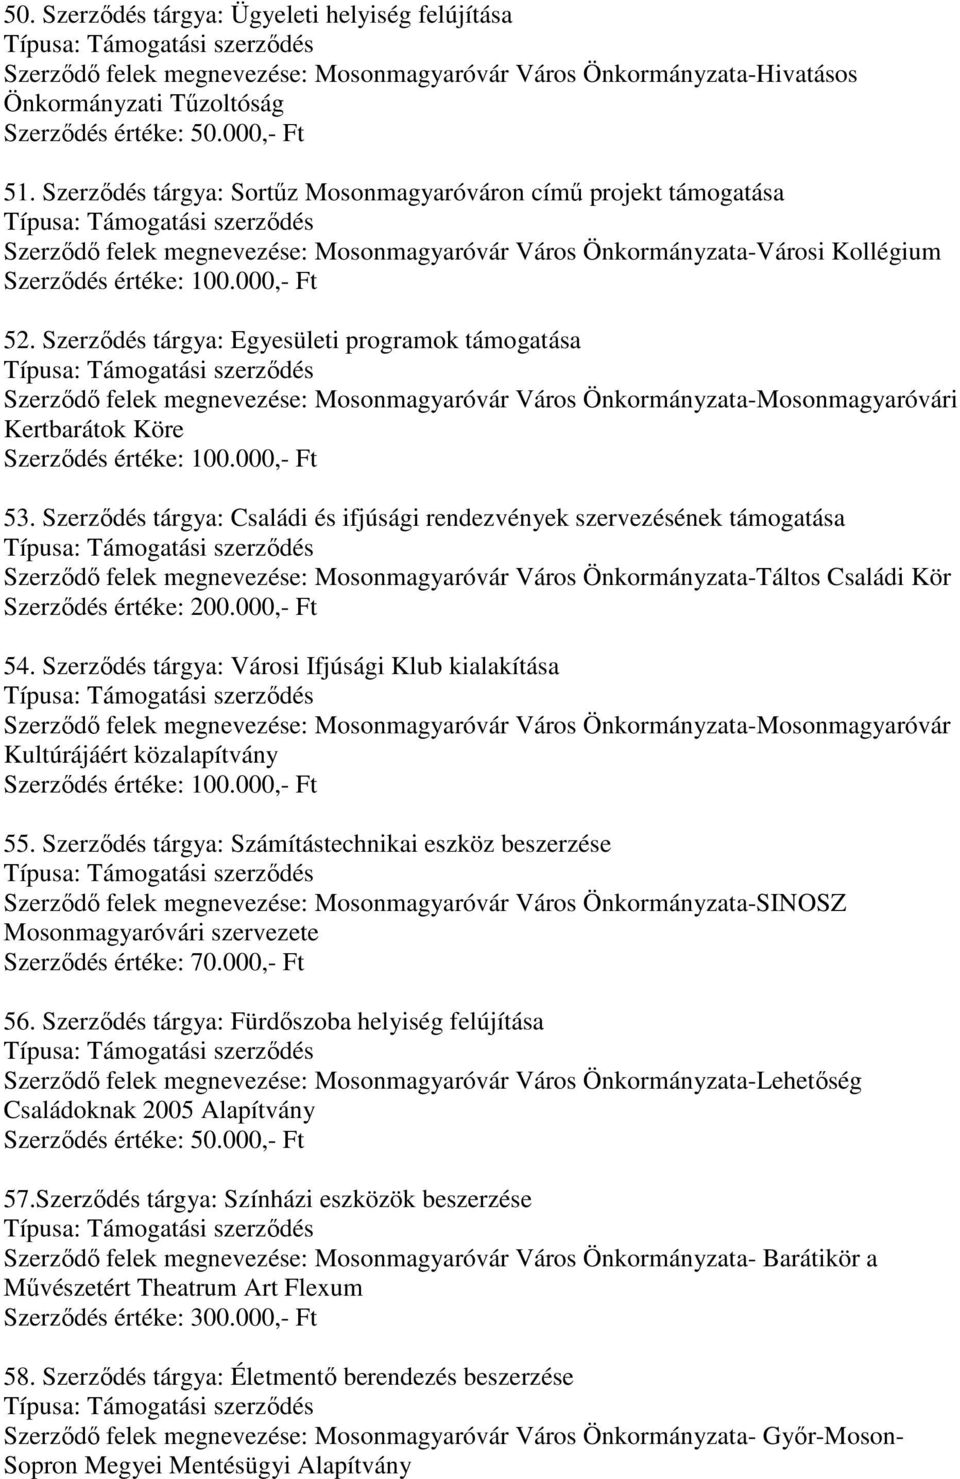 Szerződés tárgya: Egyesületi programok Szerződő felek megnevezése: Mosonmagyaróvár Város Önkormányzata-Mosonmagyaróvári Kertbarátok Köre 53.